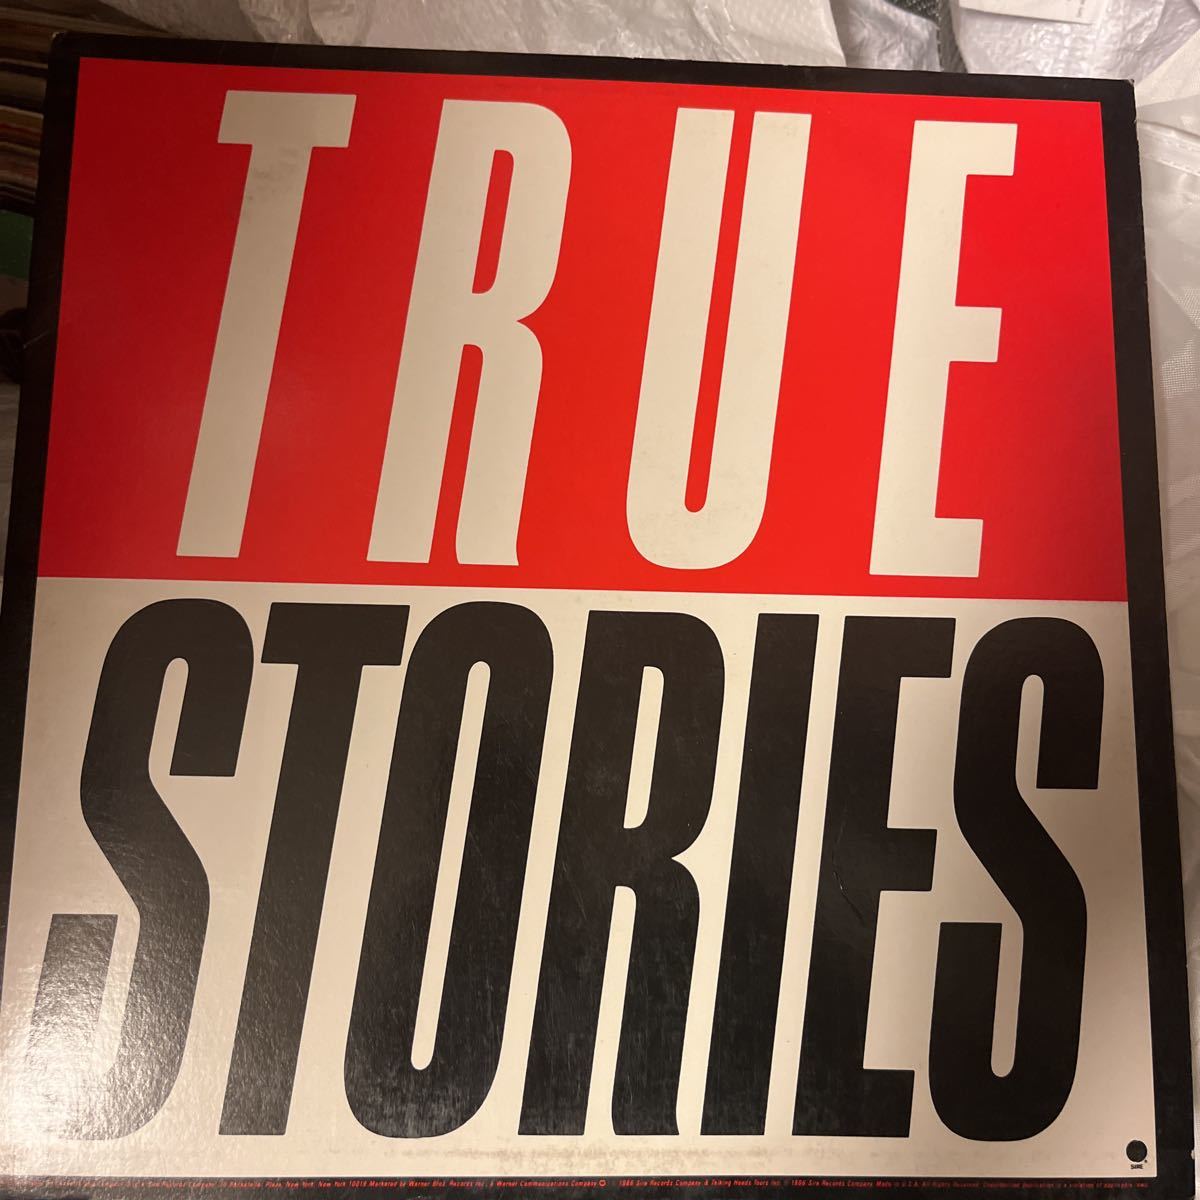 1986年作品 トーキング・ヘッズ送料無料 トルゥー・ストリィーズ 綺麗傑作最高盤 お値打ち盤 ヴィンテージレコード オールドレコードの画像2